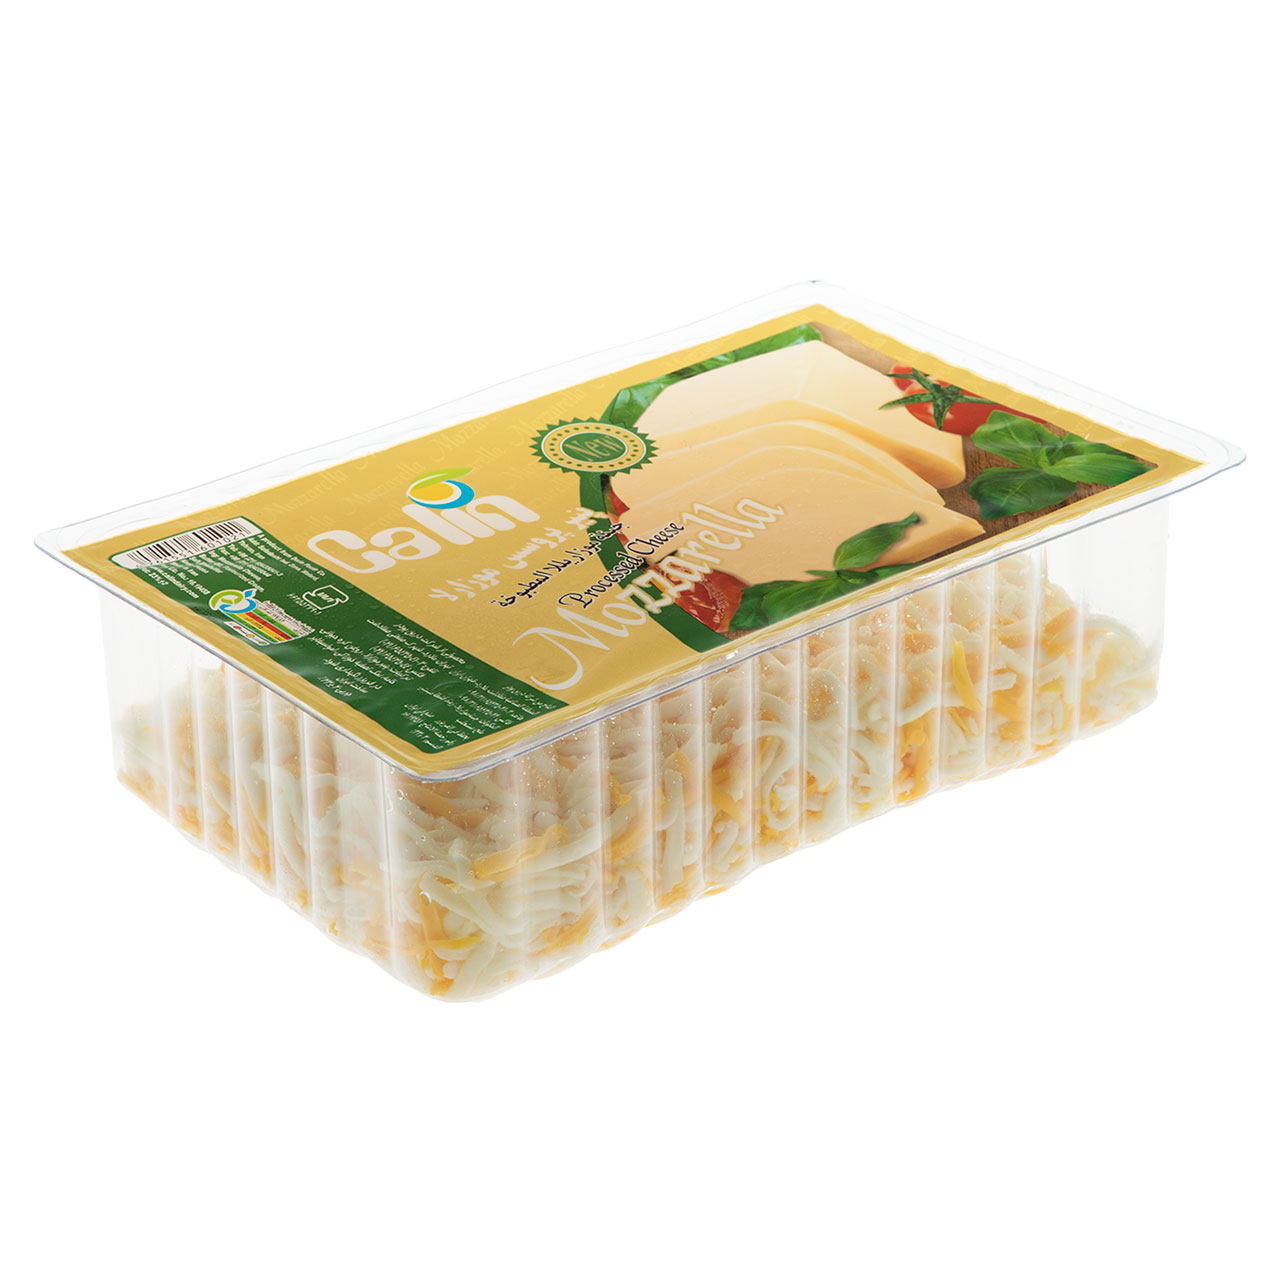 پنیر پروسس با طعم موزارلا  رنده شده کالین مقدار 1000گرم